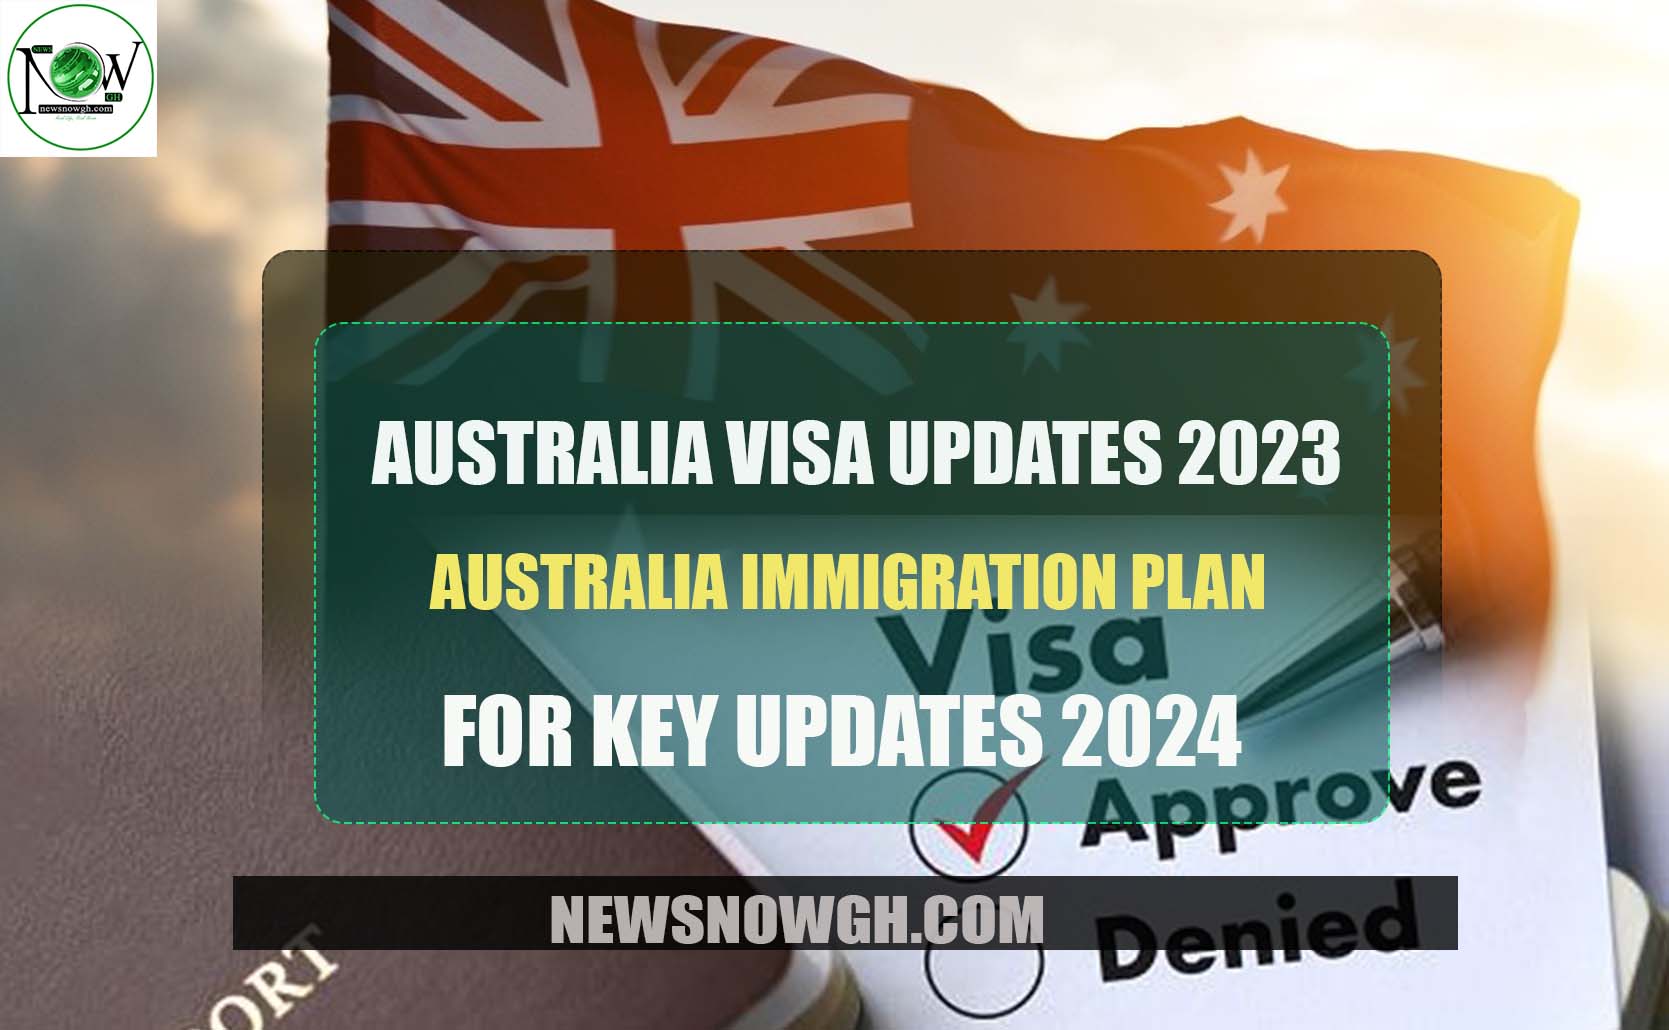 Australia Immigration Plan for 2024 Key Updates Australia Visa